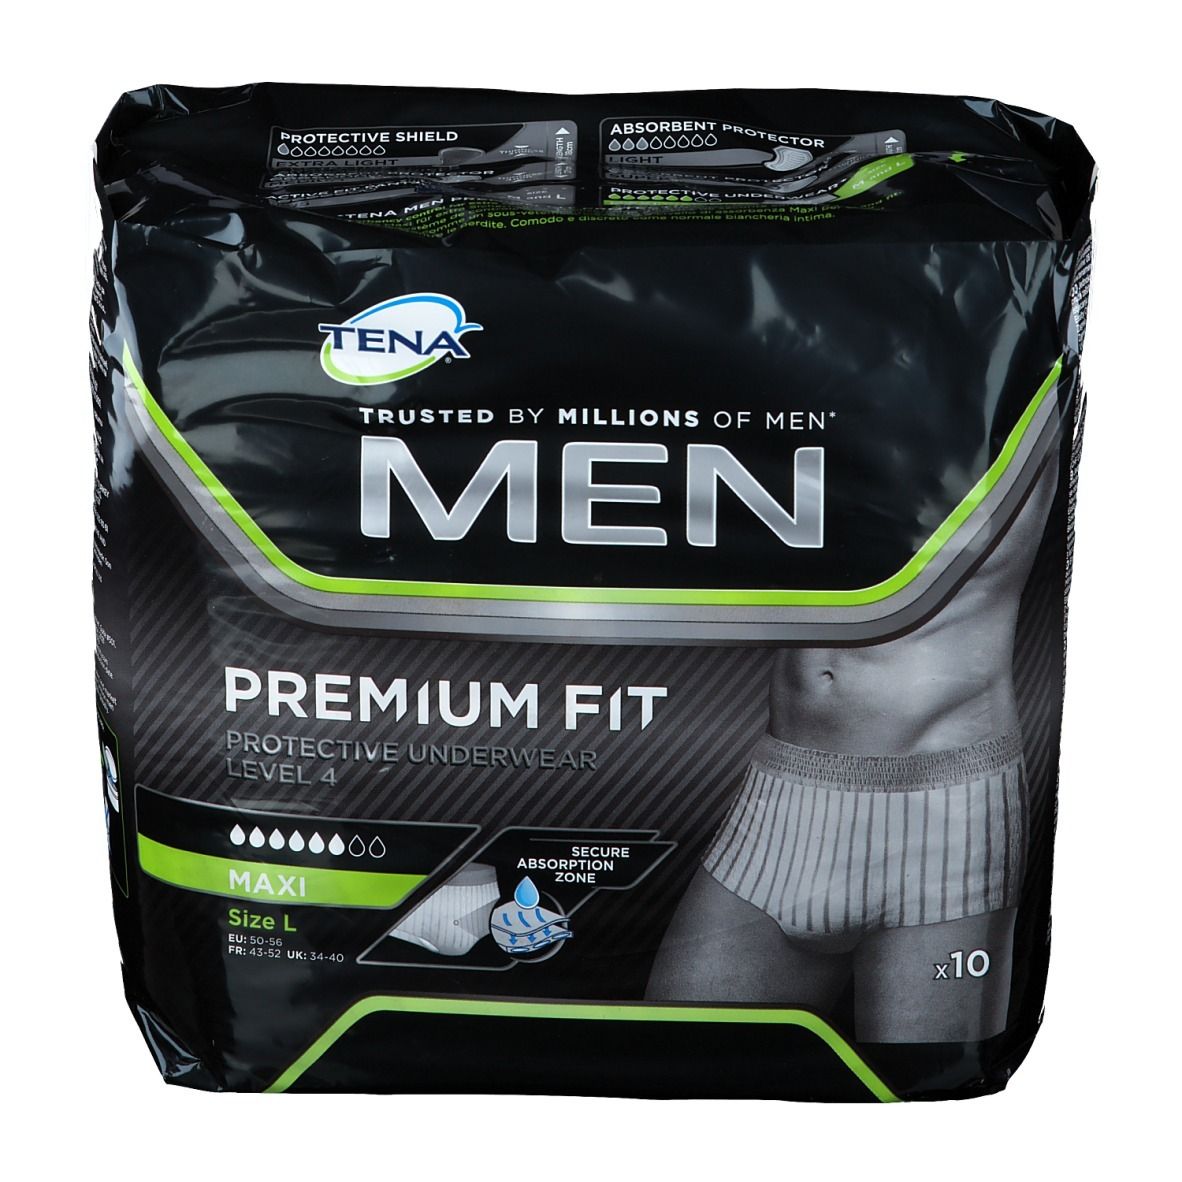 TENA MEN Premium Fit Protective Underwear Level 4 L 10 St - shop ...